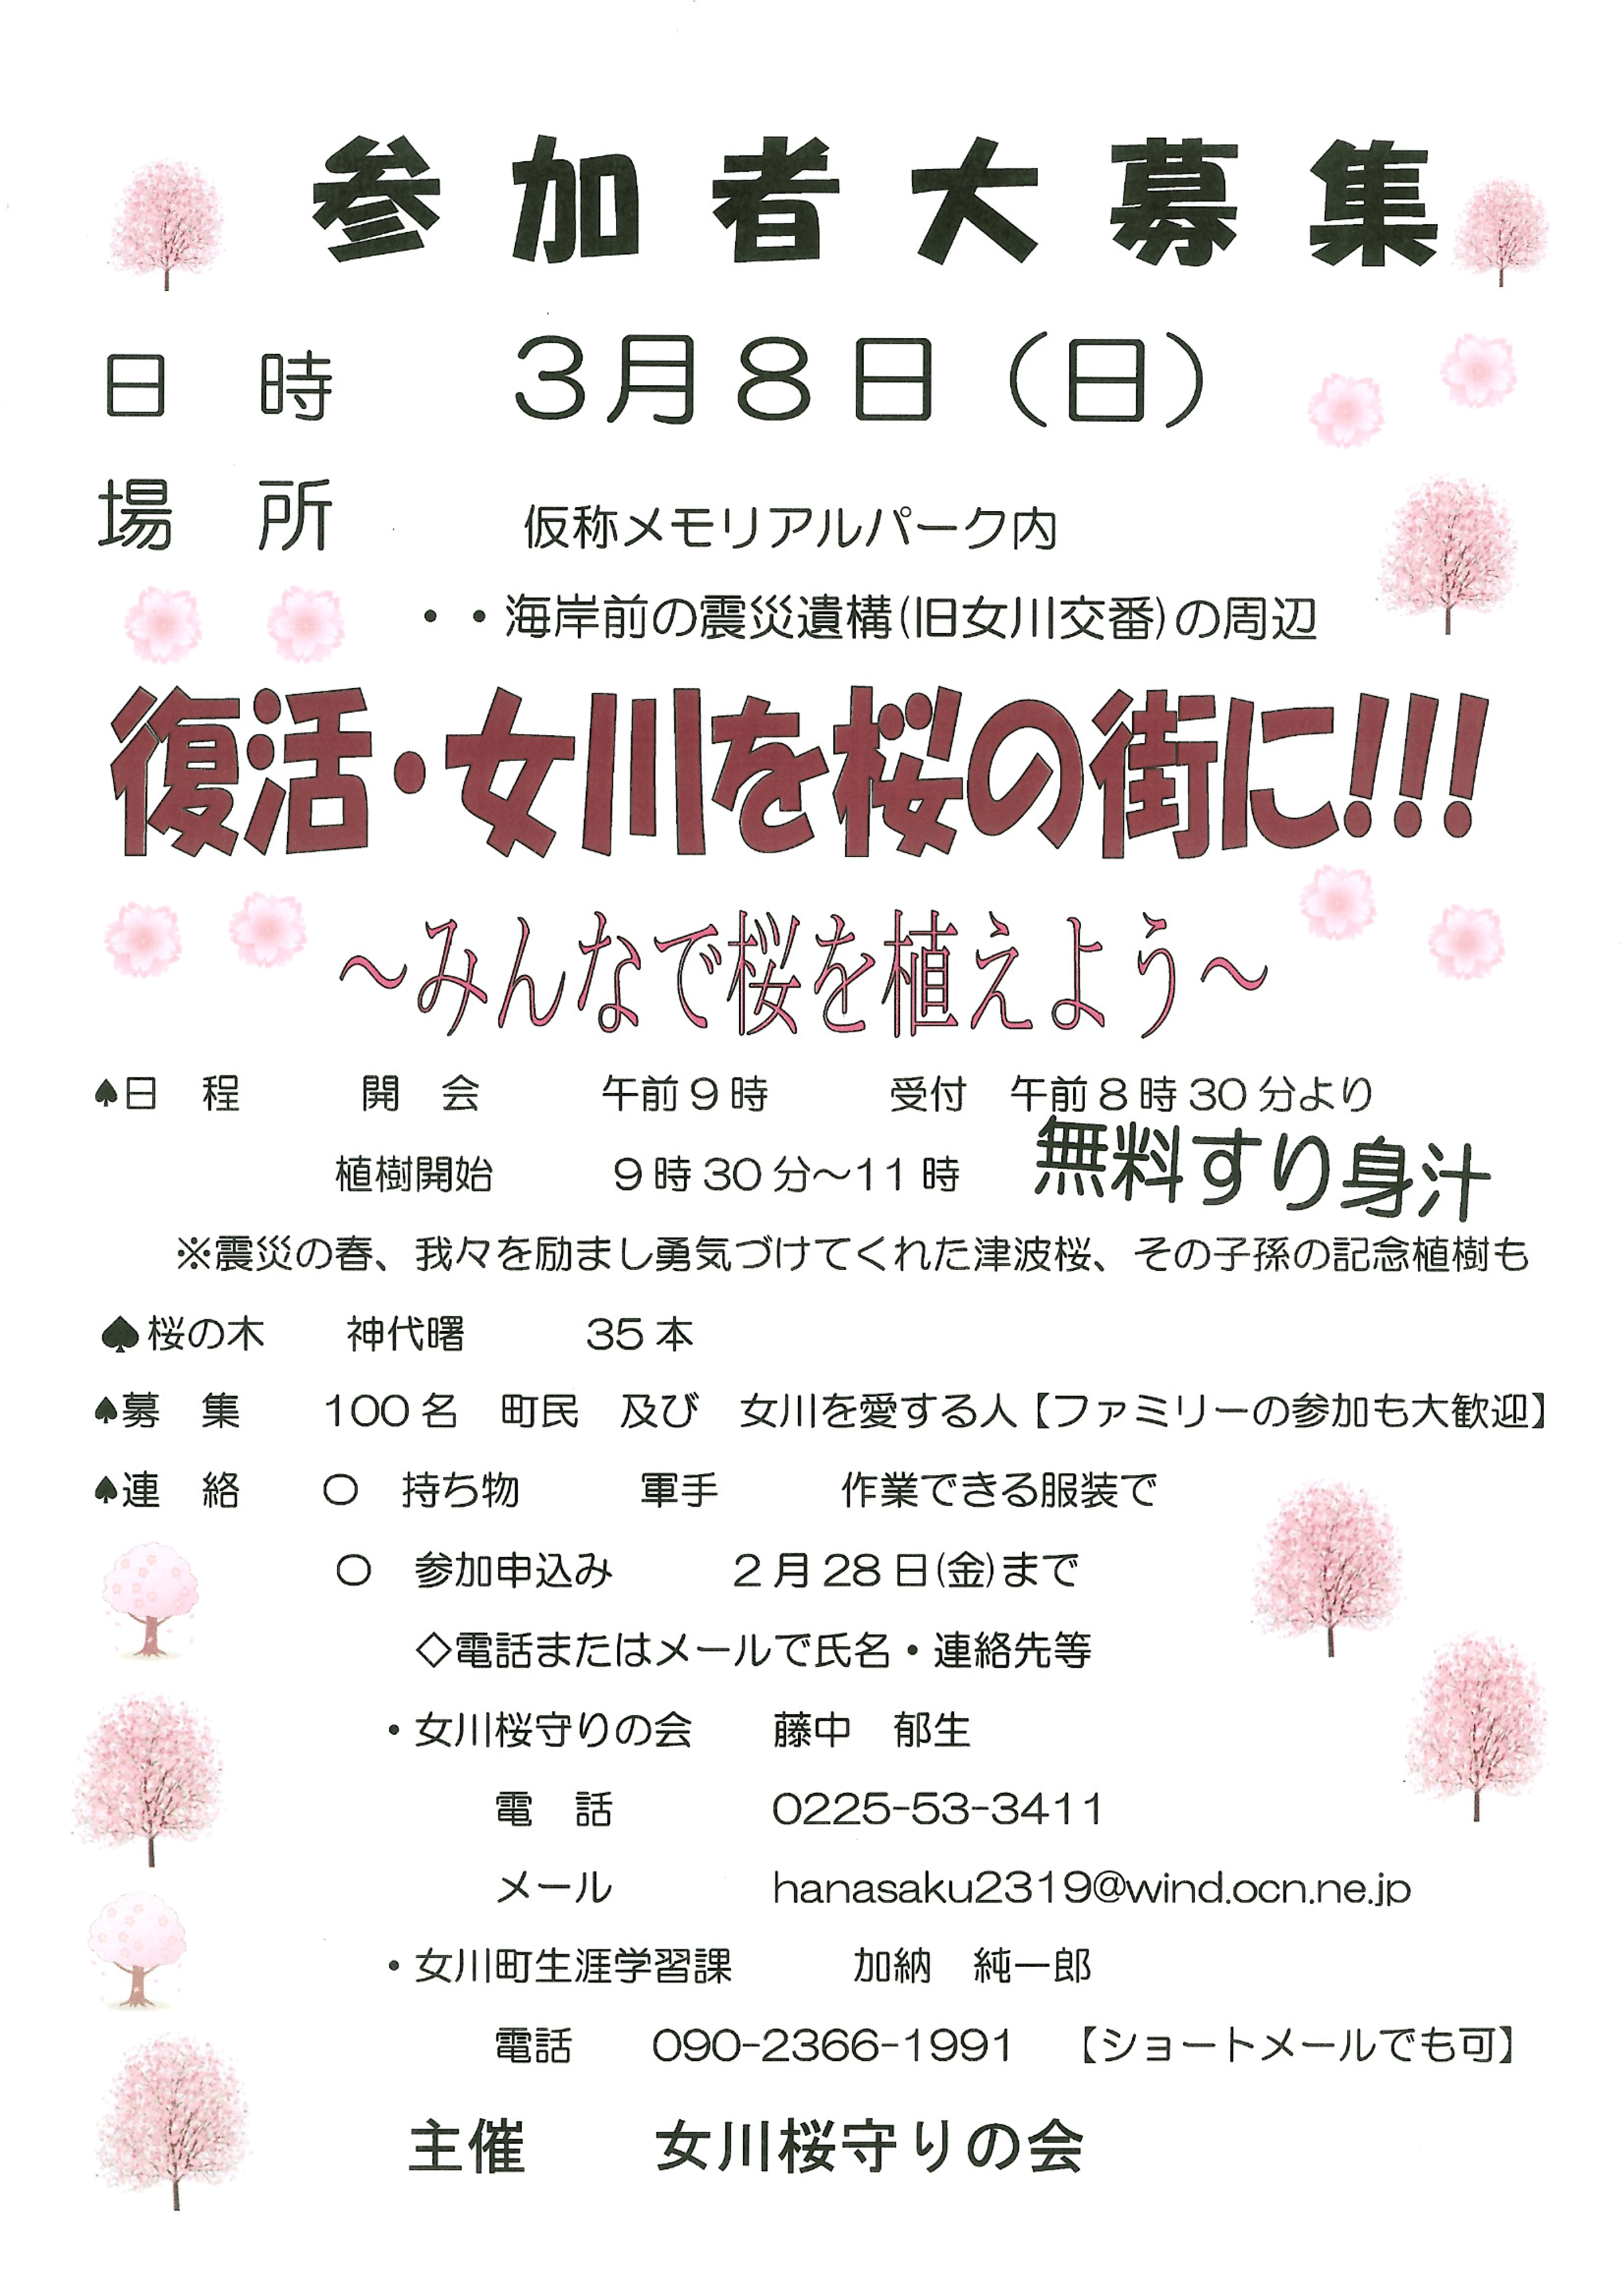 桜の植樹参加者募集のお知らせ